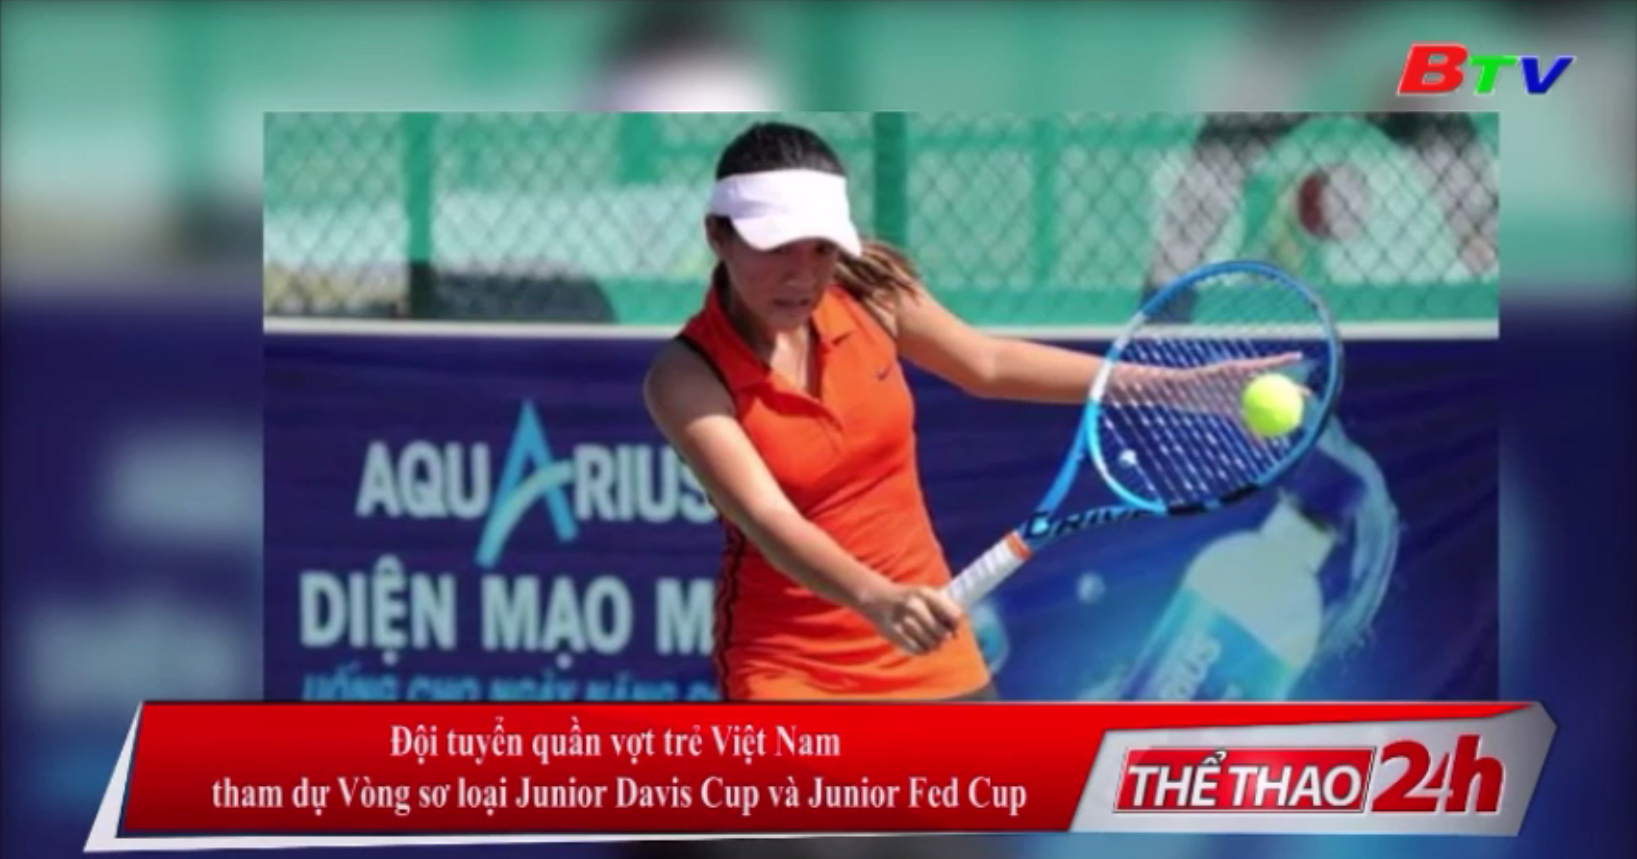 Đội tuyển quần vợt trẻ Việt Nam tham dự Vòng sơ loại Junior Davis Cup và Junior Fed Cup